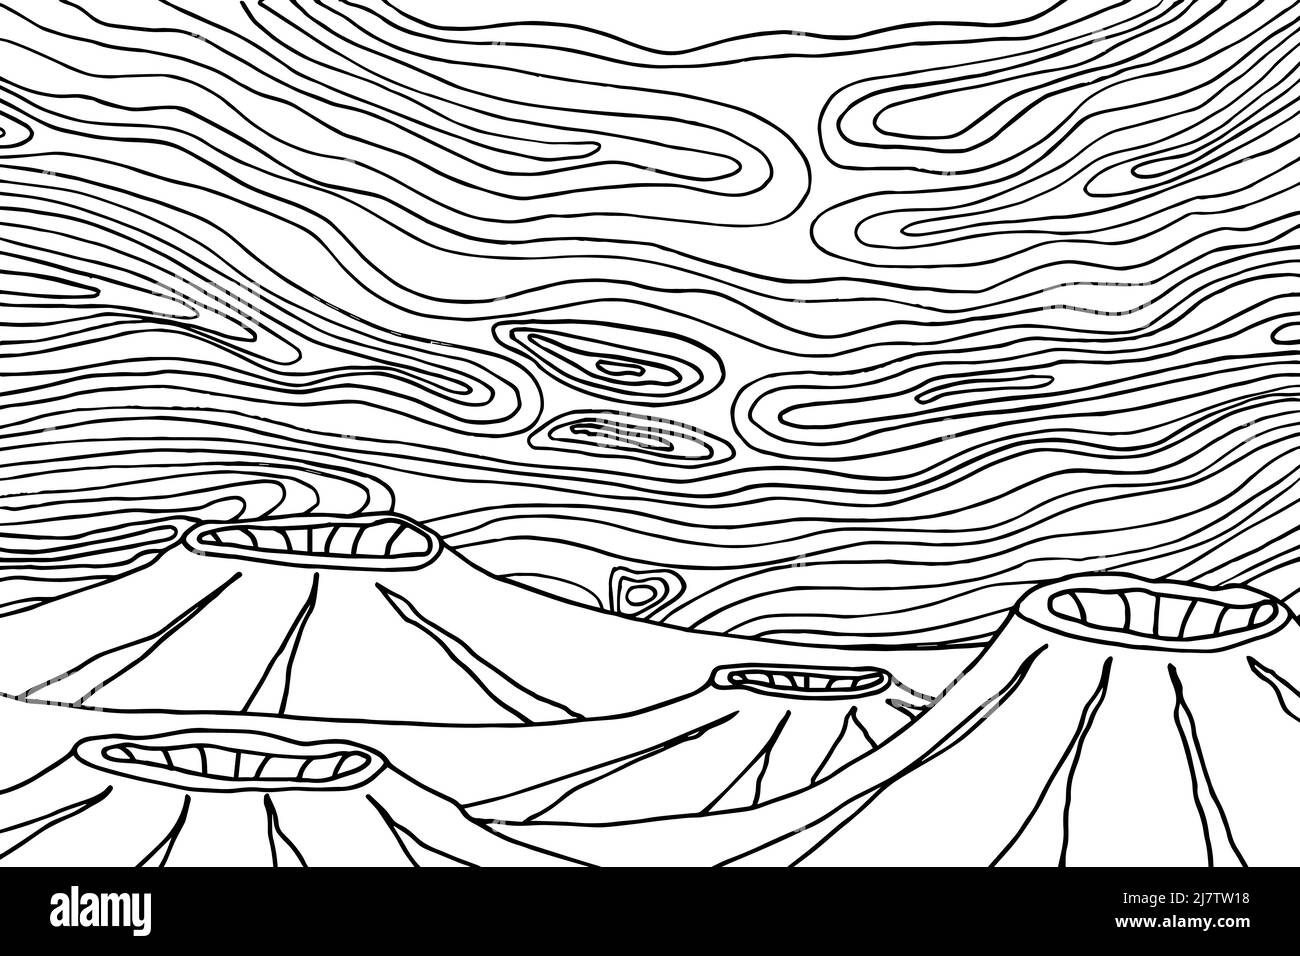 Doodle außerirdische Fantasy-Landschaft mit großen Berg Malvorlagen für Erwachsene. Fantastische psychedelische Grafik. Vektor von Hand gezeichnete einfache flache Illust Stock Vektor